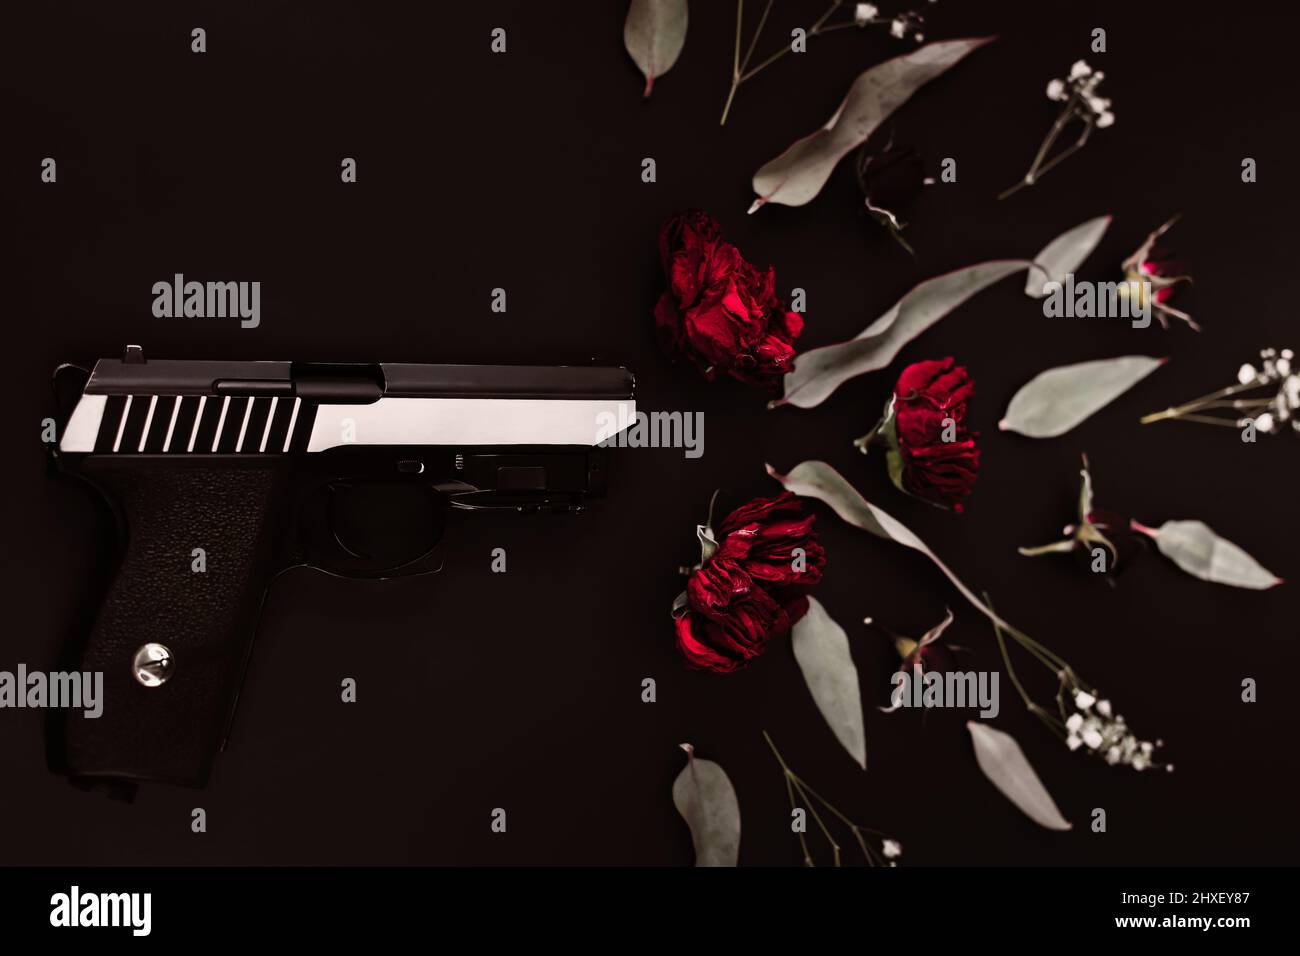 Flach legen für die Welt, auf einem schwarzen Hintergrund Pistole und Rosenblumen, Simulation eines Schusses Stockfoto